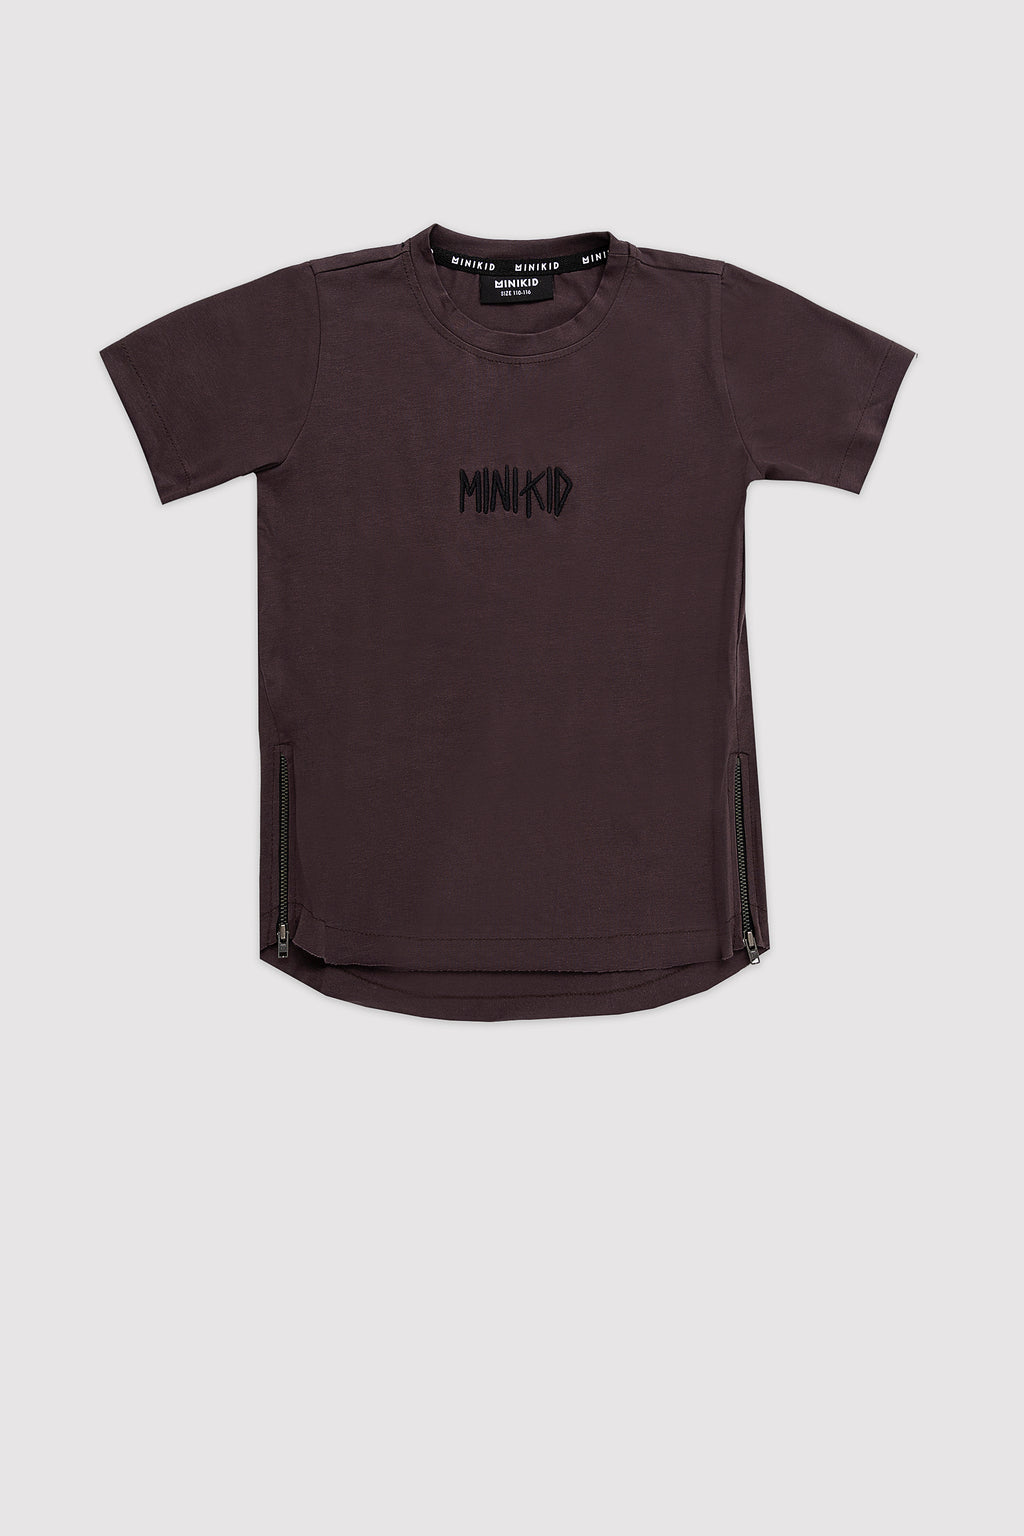 Bruine T-shirt van Minikid met geborduurd MINIKID-logo op de borst.